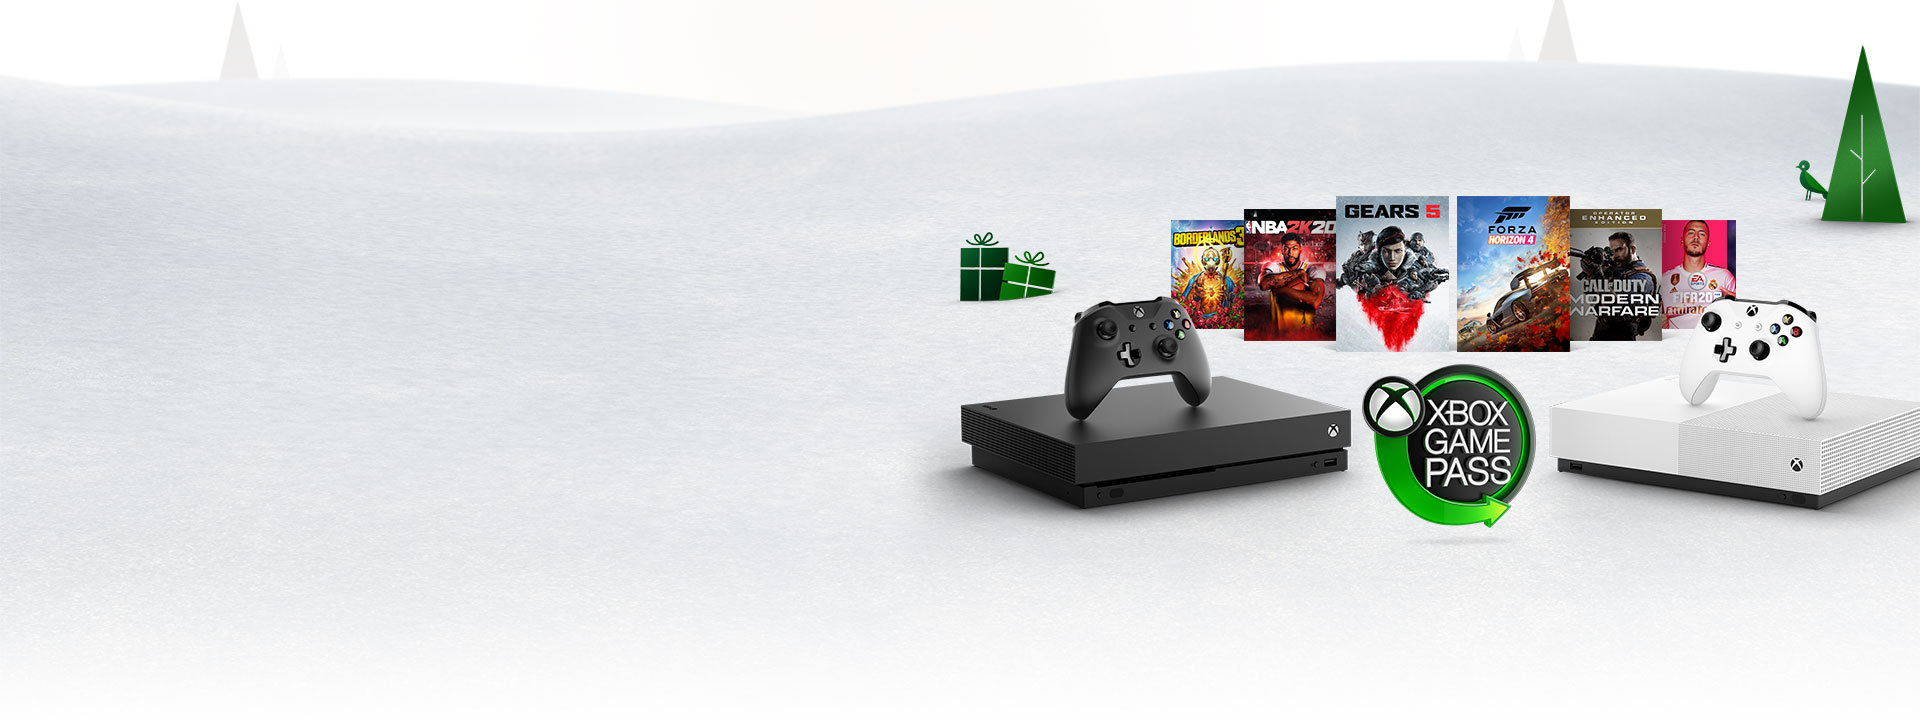 Site officiel Xbox : Consoles, jeux et communautÃ© | Xbox - 